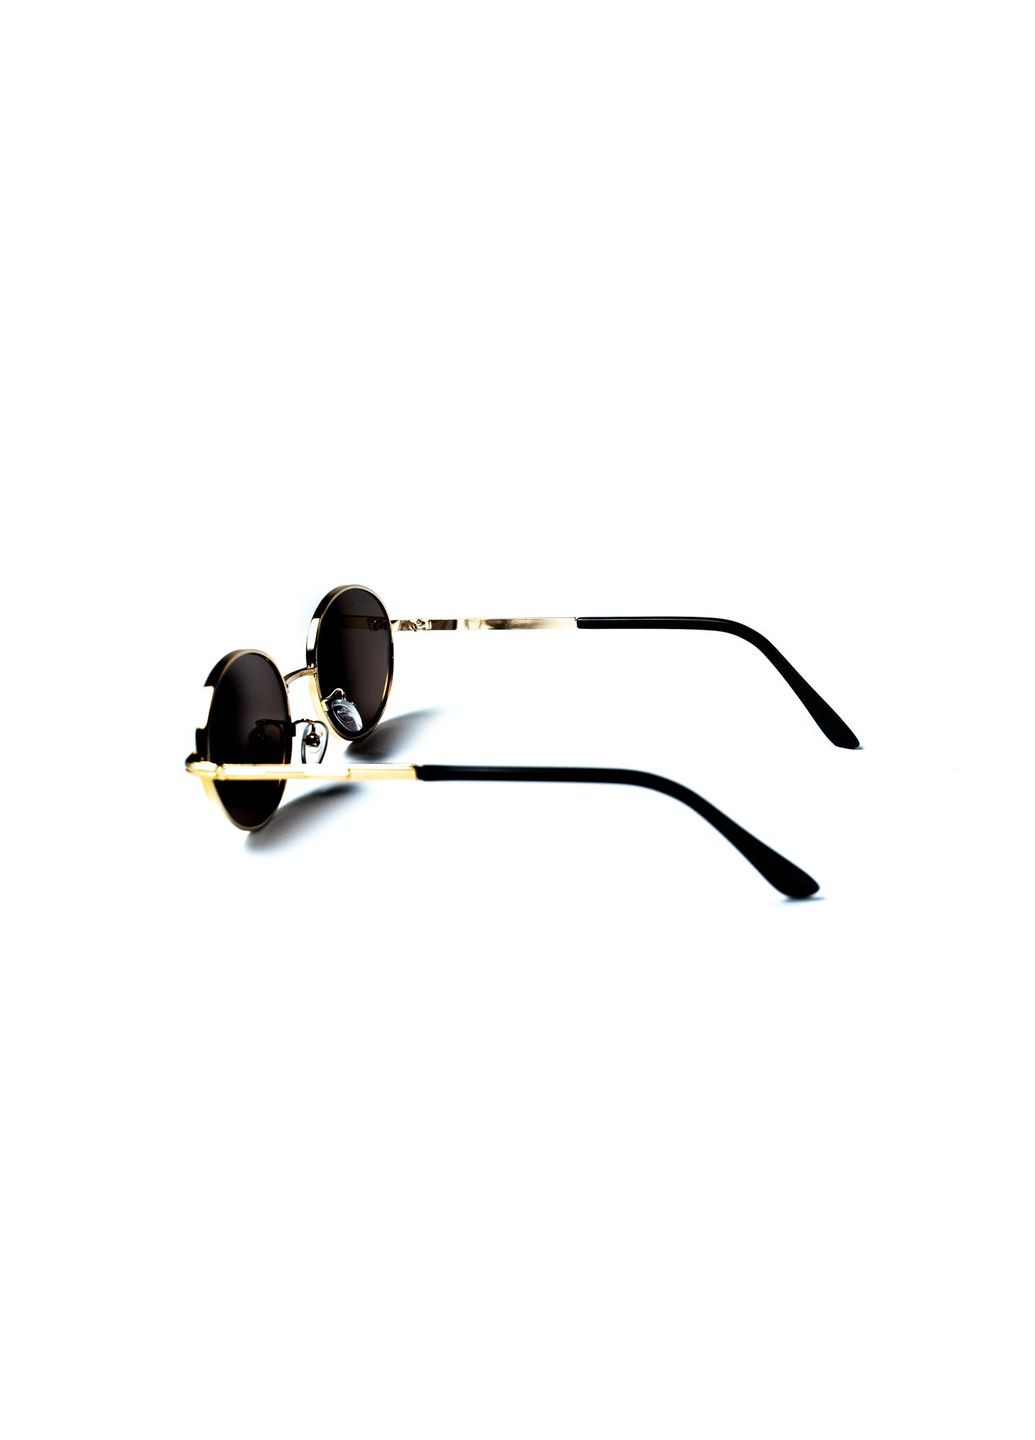 Солнцезащитные очки Эллипсы женские LuckyLOOK 434-967 (291161712)